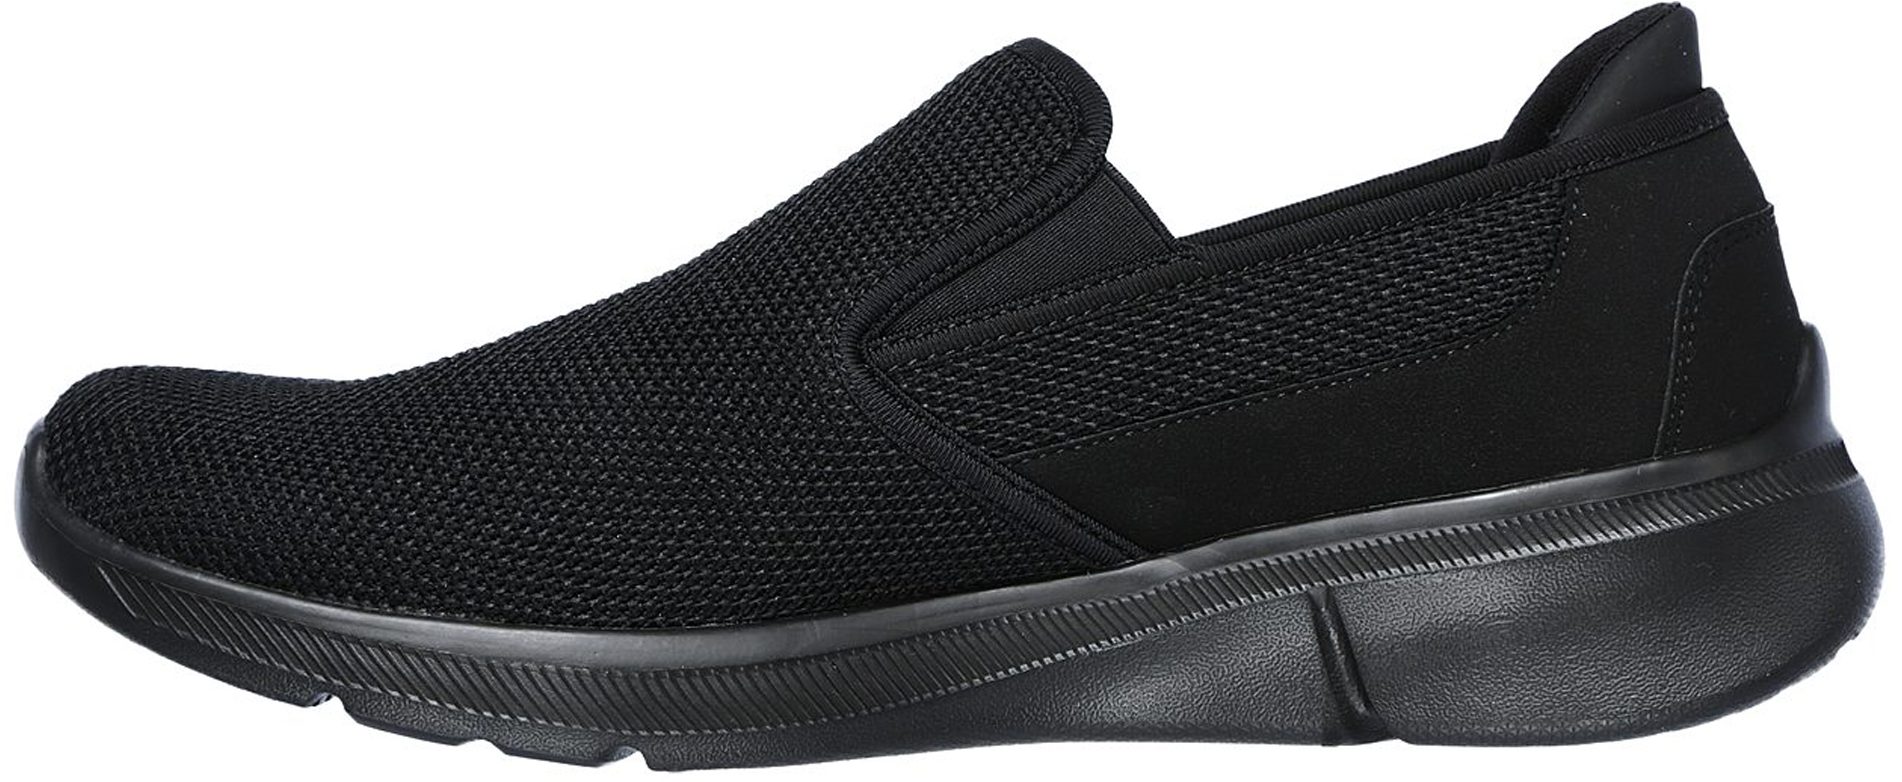 Skechers Equalizer 3.0 - Sumnin Black 52937 BBK - Casual Shoes ...